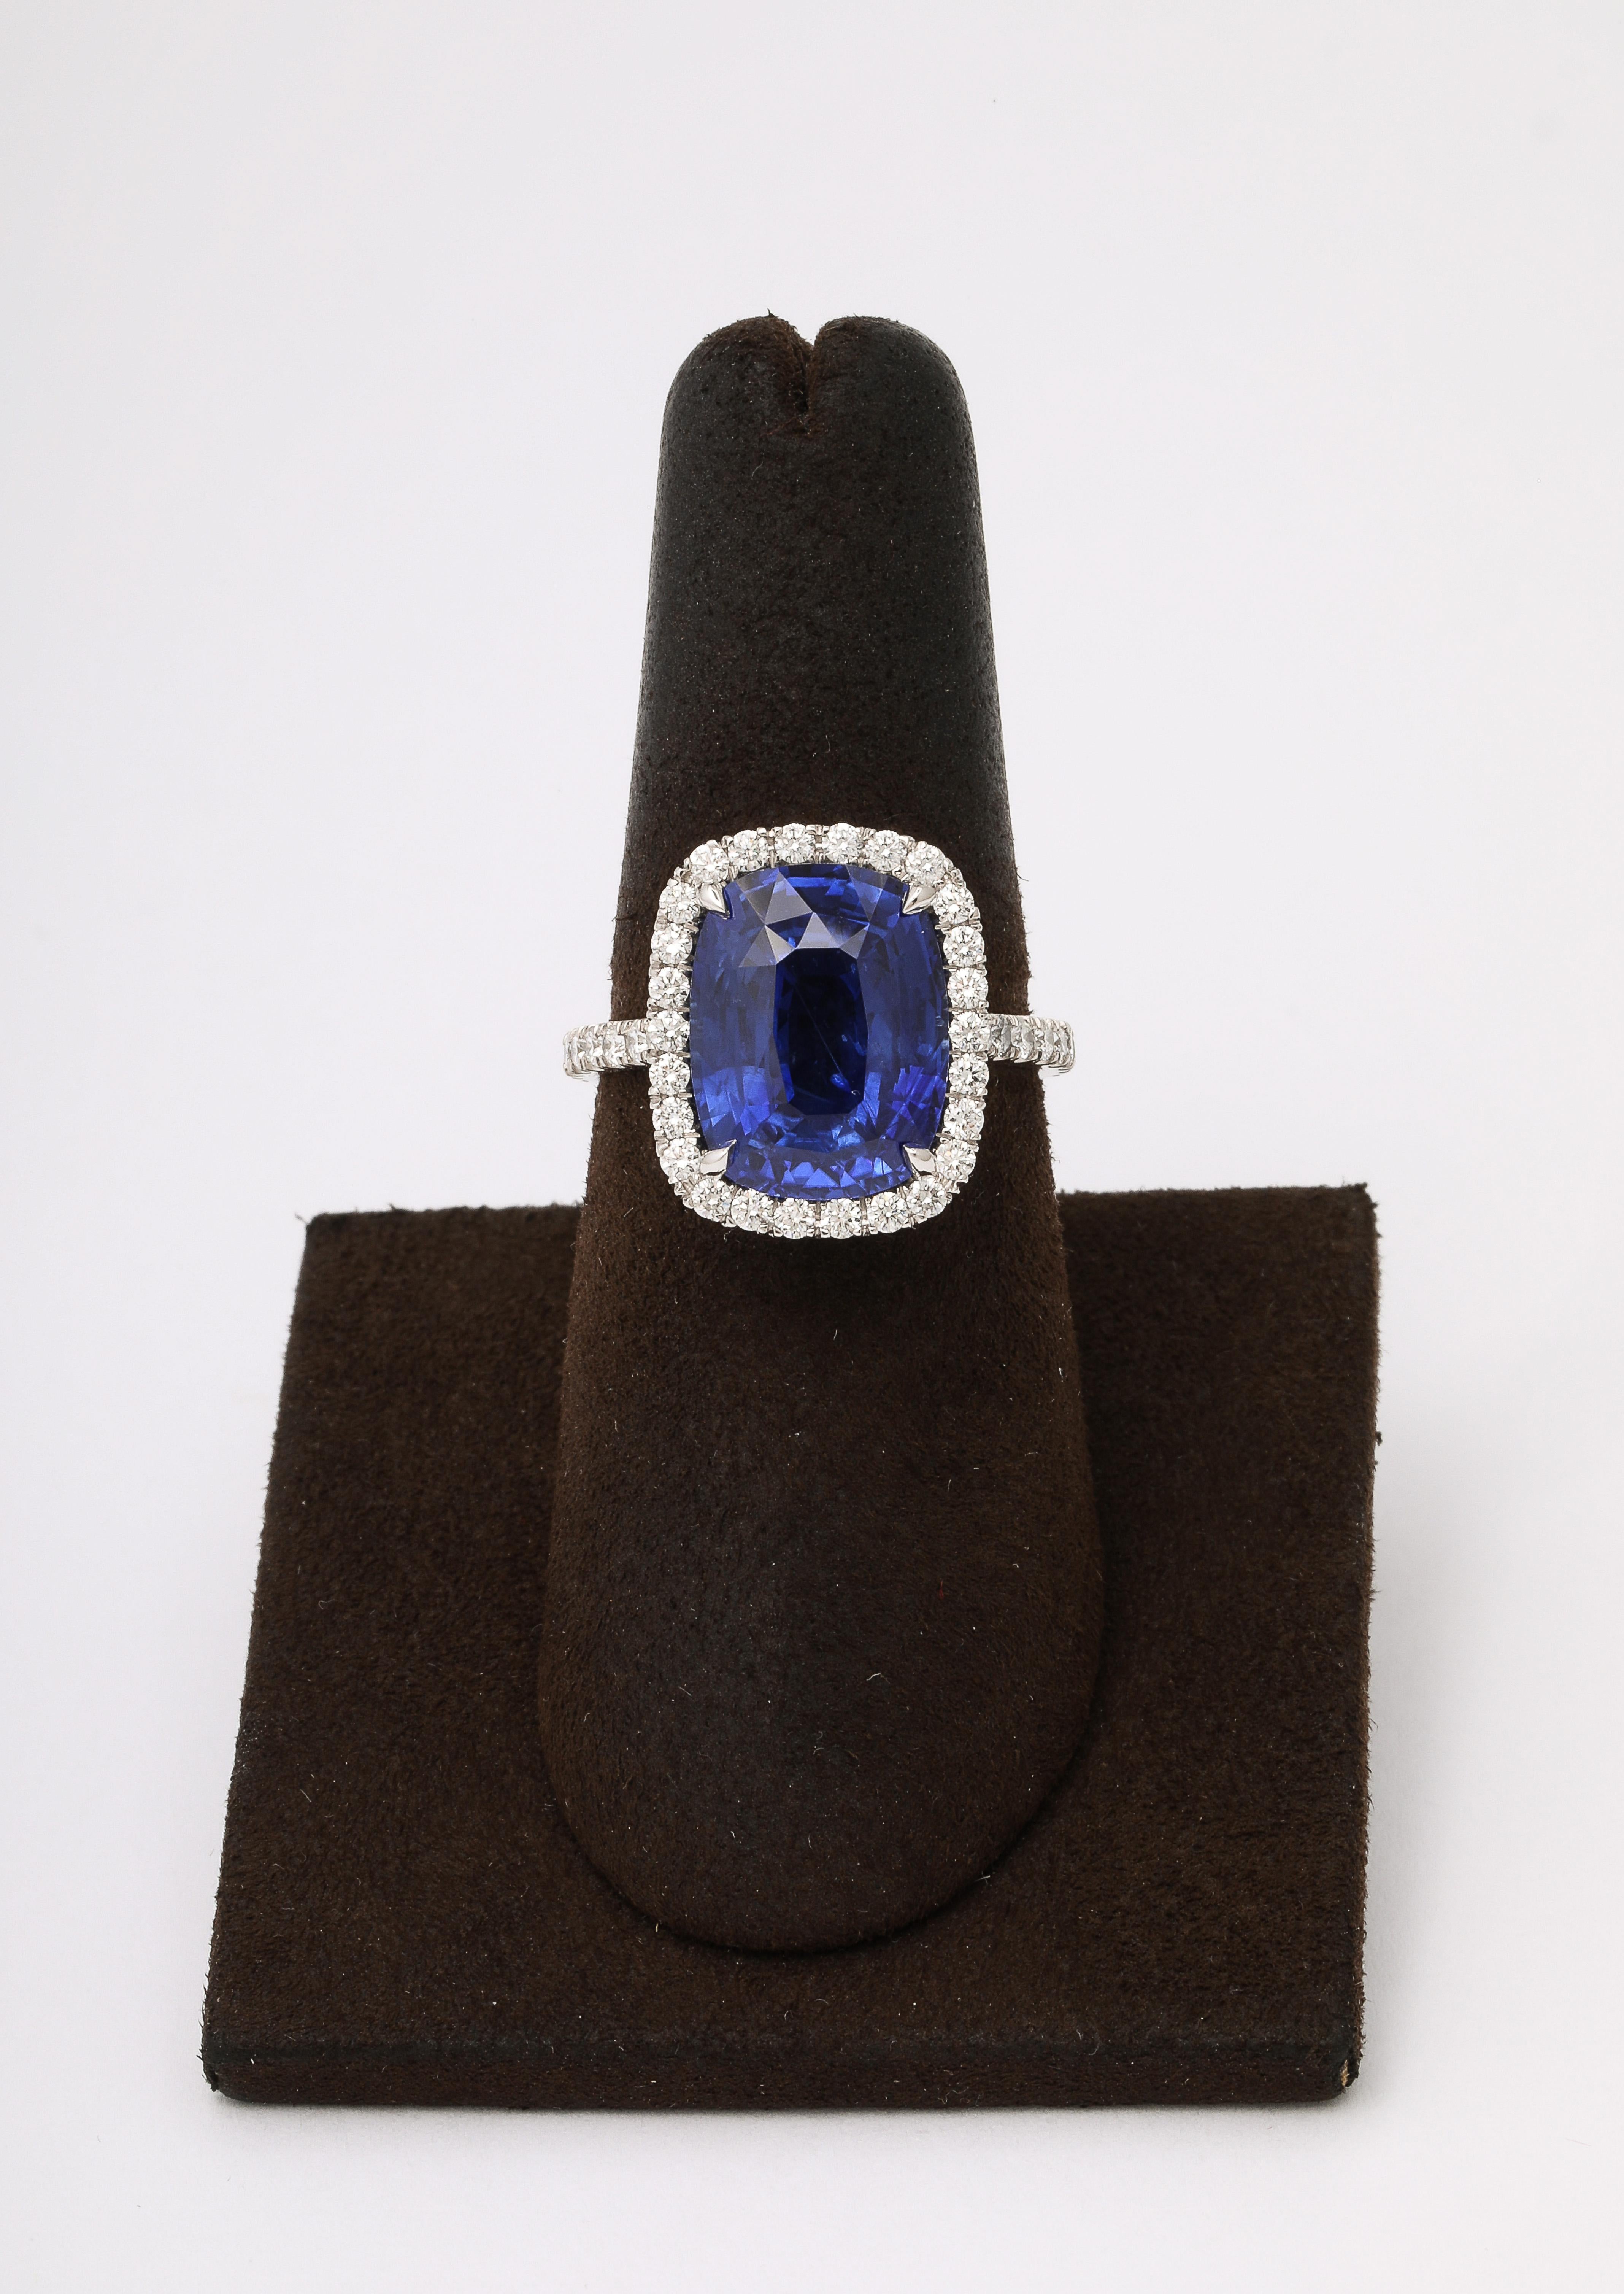 
Ein UNGLAUBLICHER Saphir! 

7,94 Karat VIVID BLUE Cushion Cut, Ceylon Sapphire.

Eingefasst in eine Platin- und Diamantfassung mit 0,80 Karat weißen, runden Diamanten im Brillantschliff.

Derzeit eine Größe 6,5 - dieser Ring kann leicht geändert